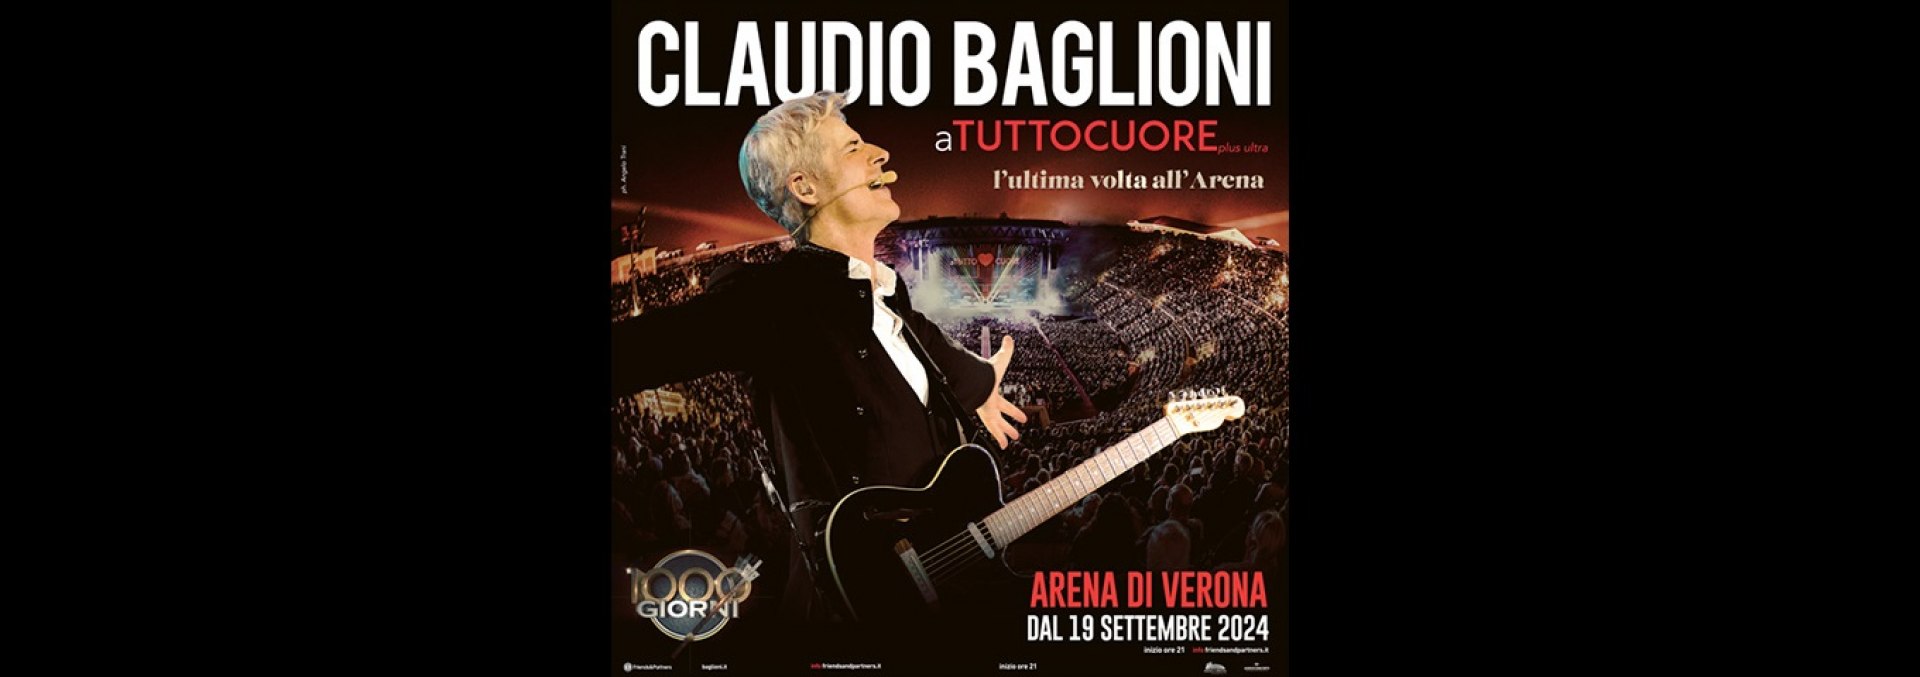 Claudio Baglioni aTUTTOCUORE plus ultra